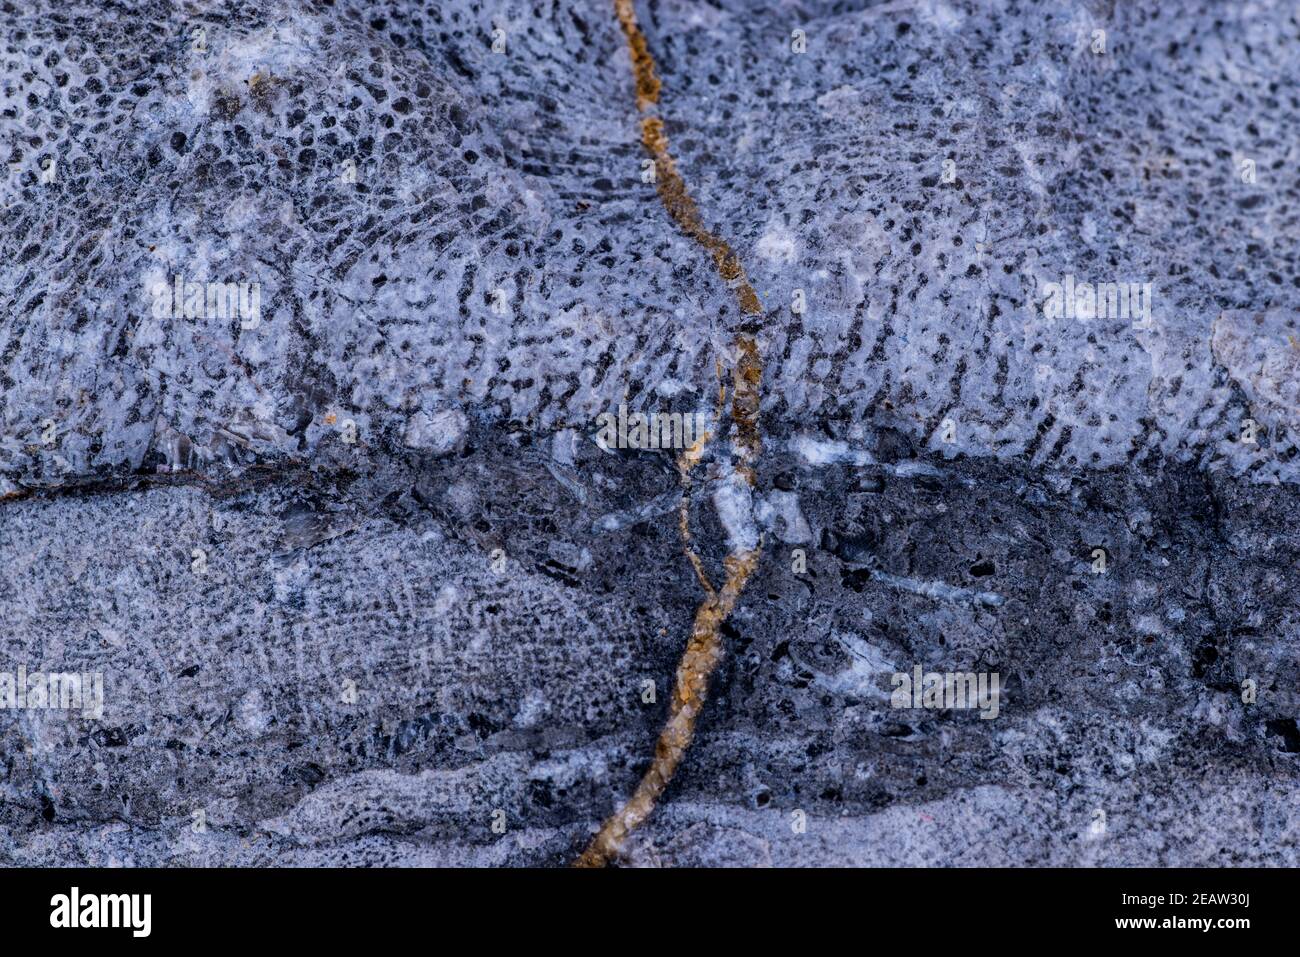 limestone with Bryozoa fossils in a closeup Stock Photo